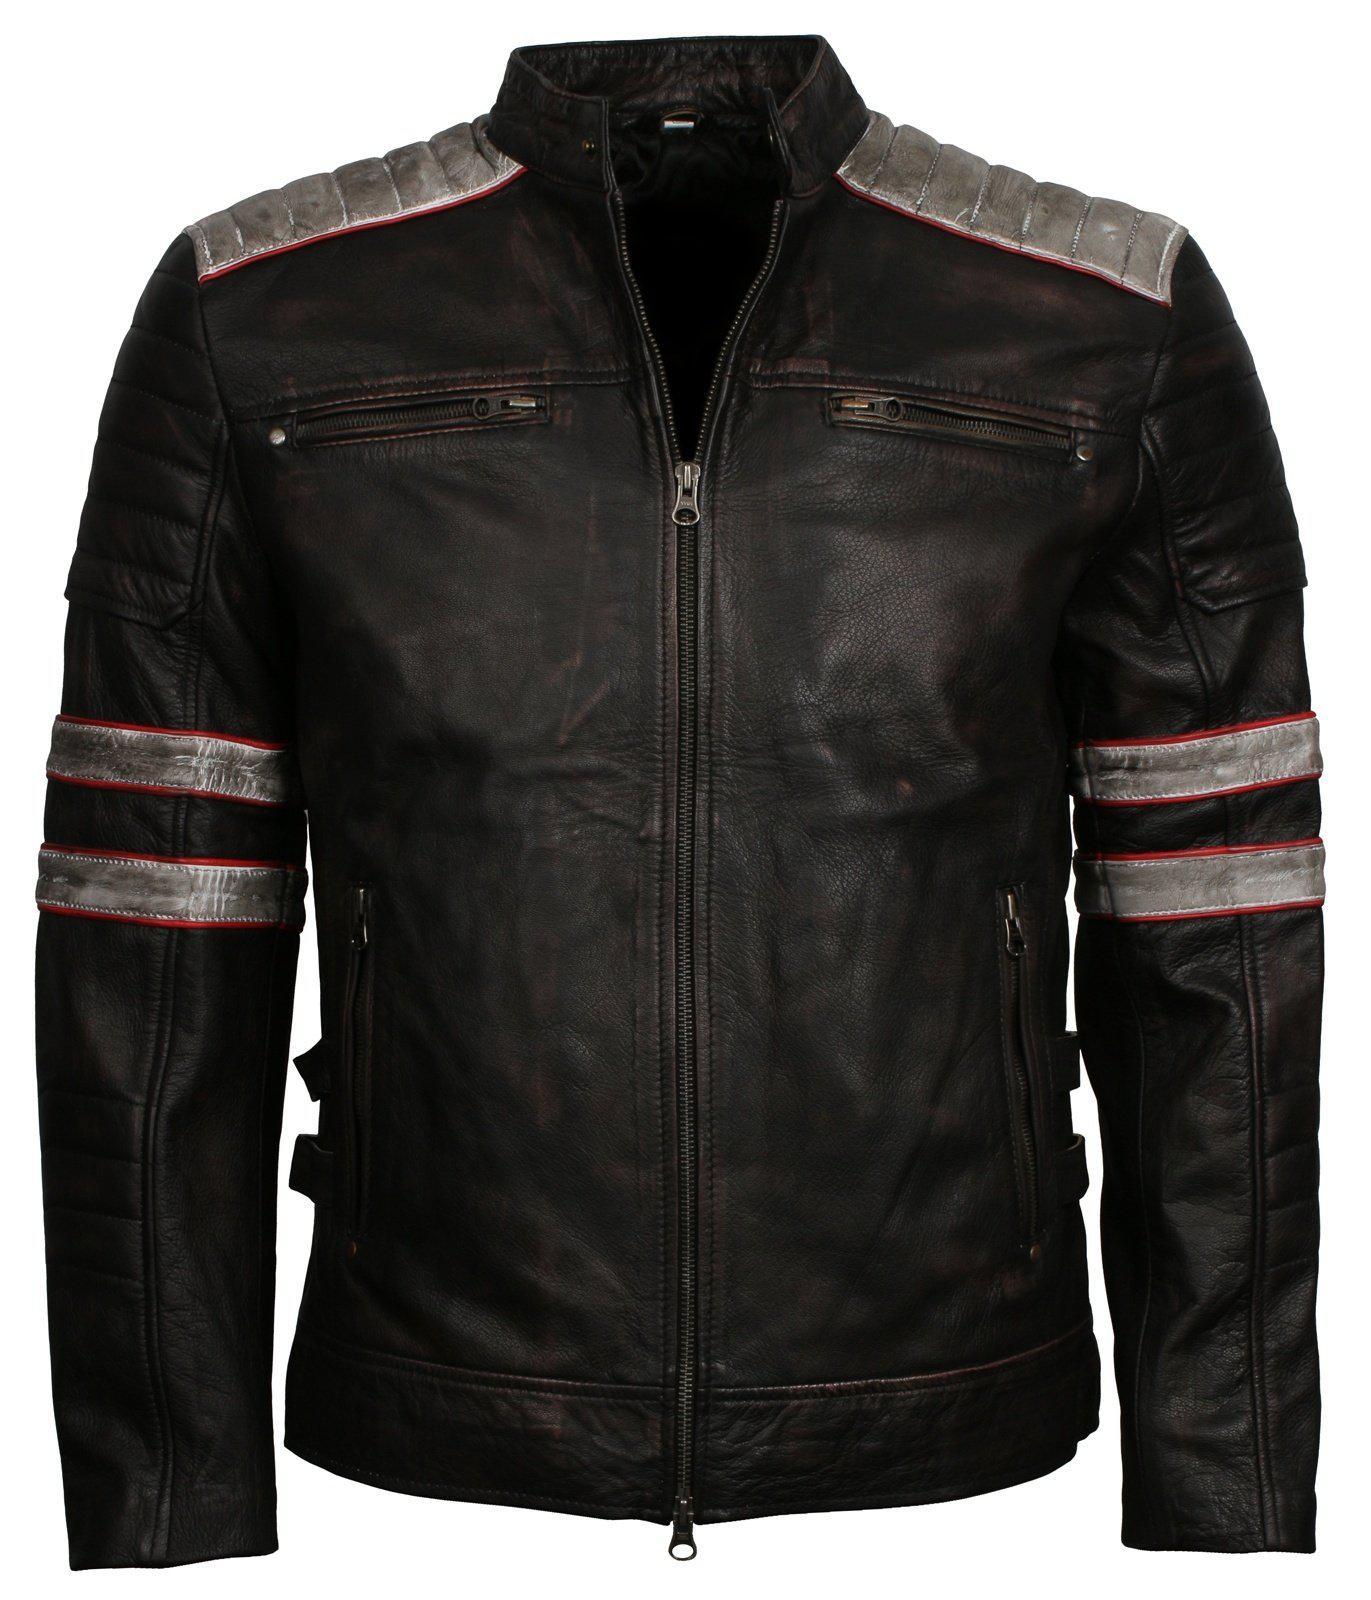 Black Leather Biker Jacket Men with stripes 